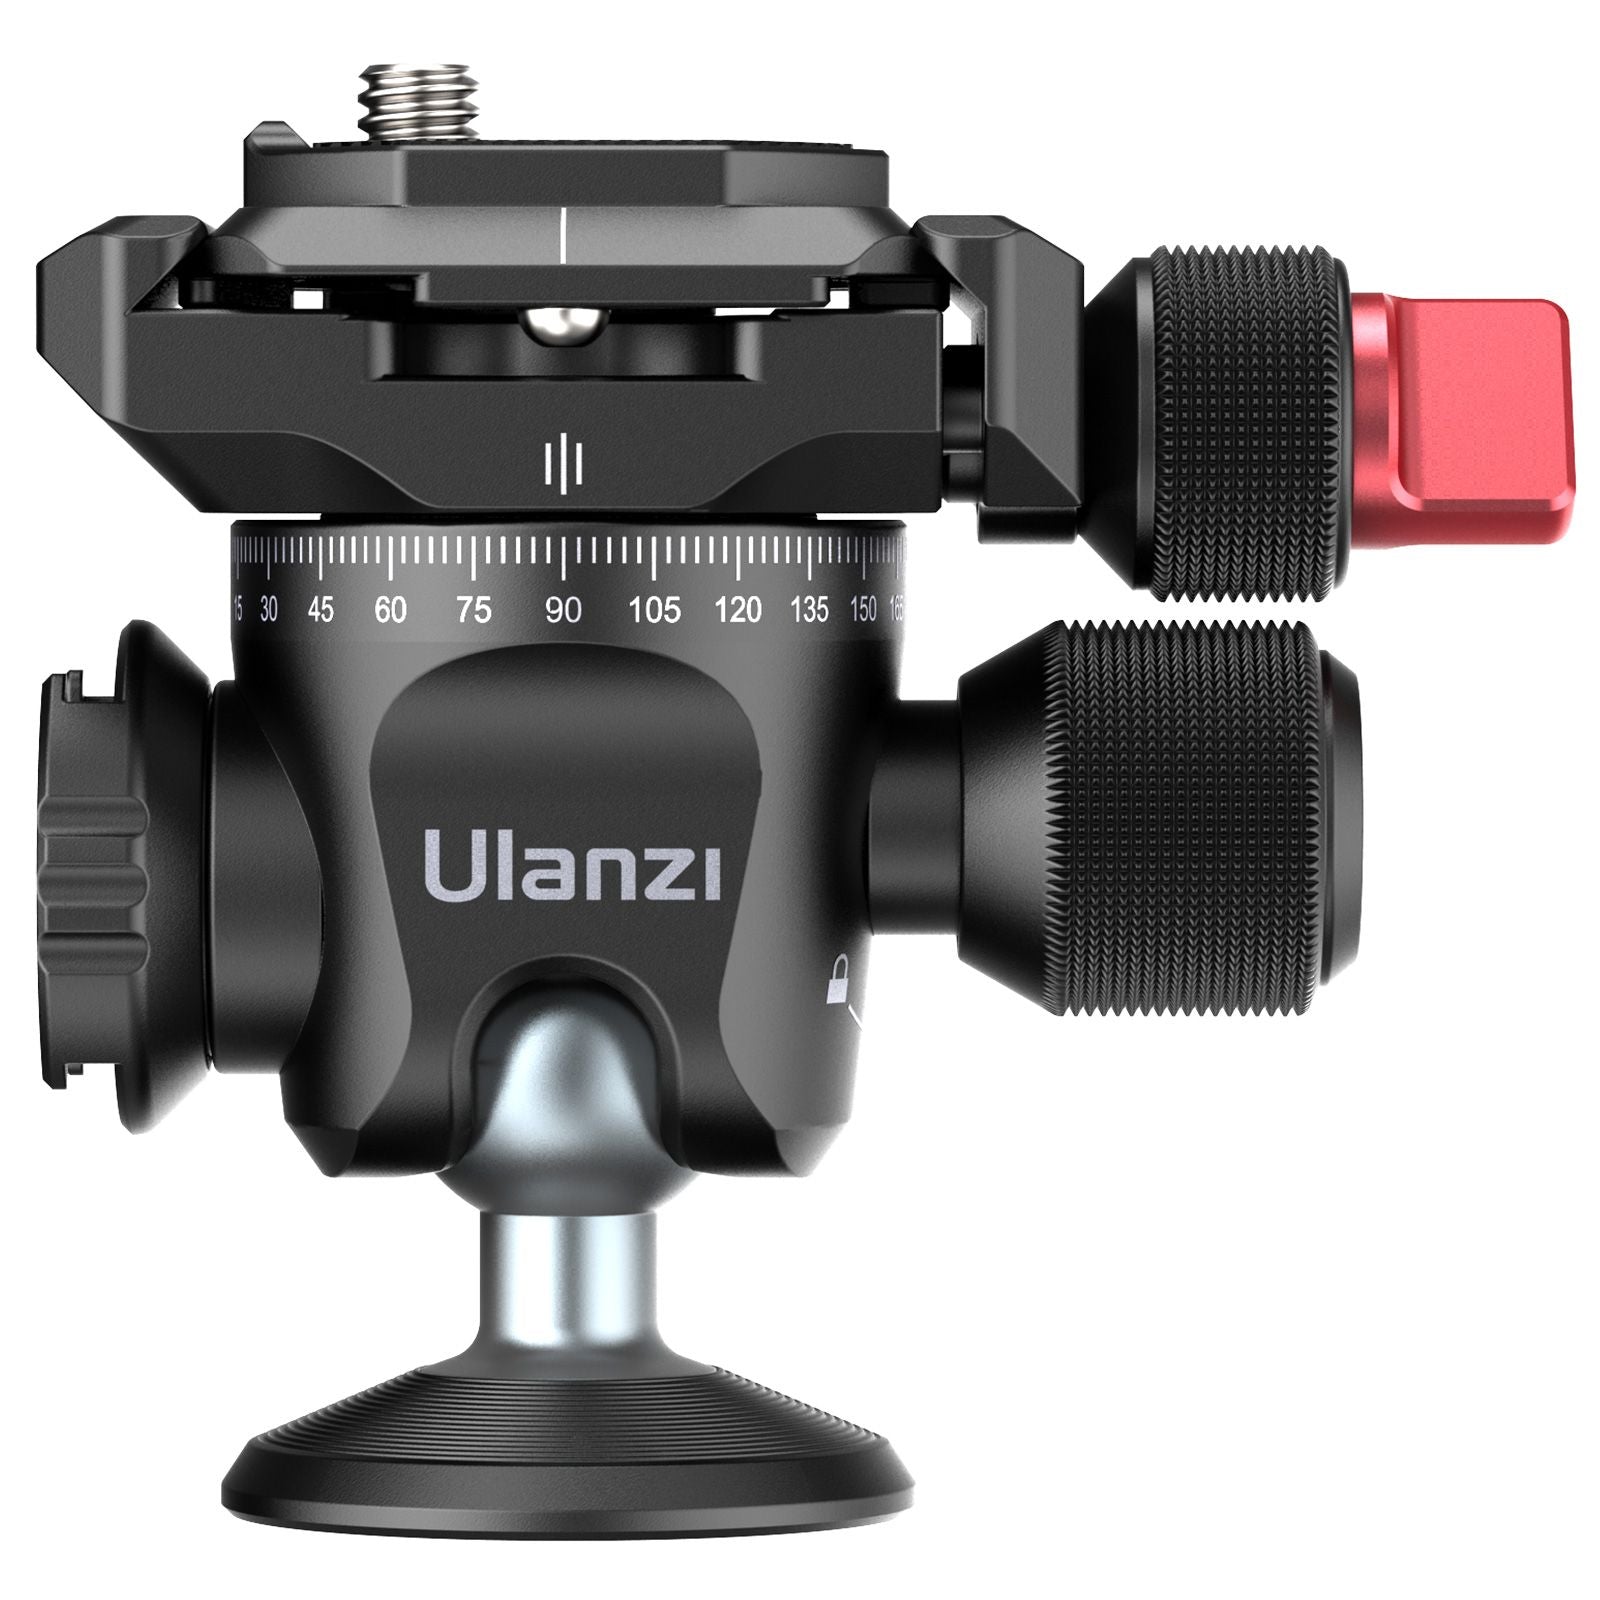 Ulanzi 2351 U-120 クイックリリースプレート付き 360度回転 メタルボールヘッド - 業務用撮影・映像・音響・ドローン専門店  システムファイブ